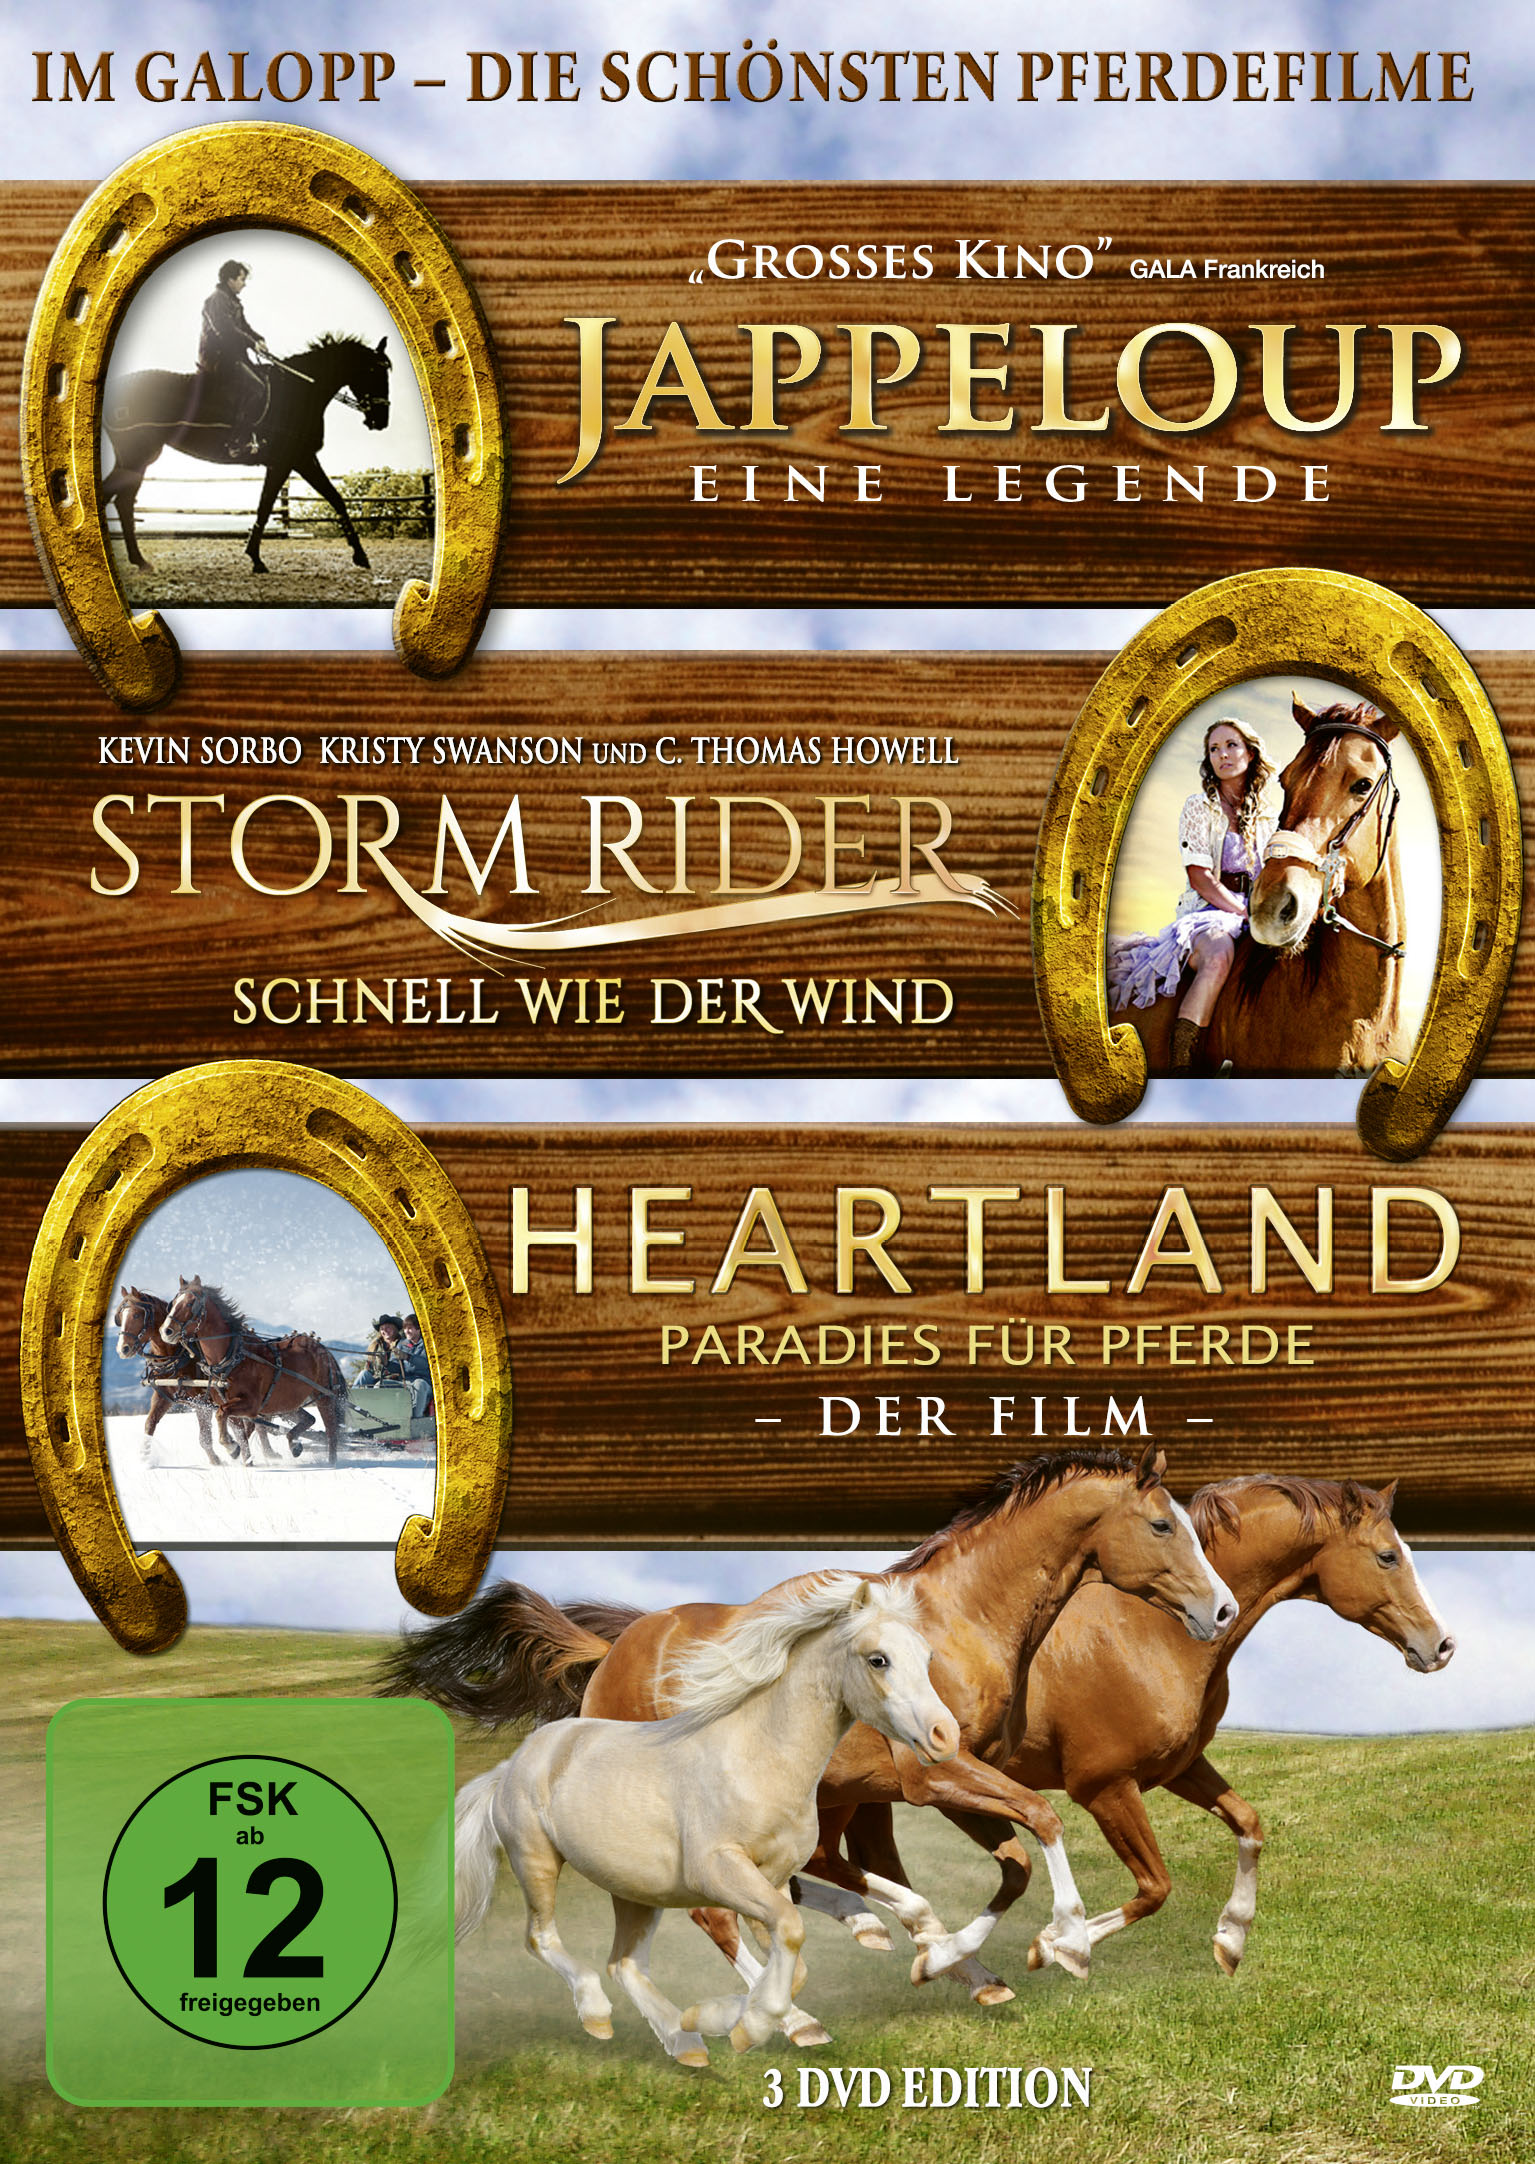 Im Galopp - Die schönsten Pferdefilme (3 DVDs) von Koch Media Home Entertainment